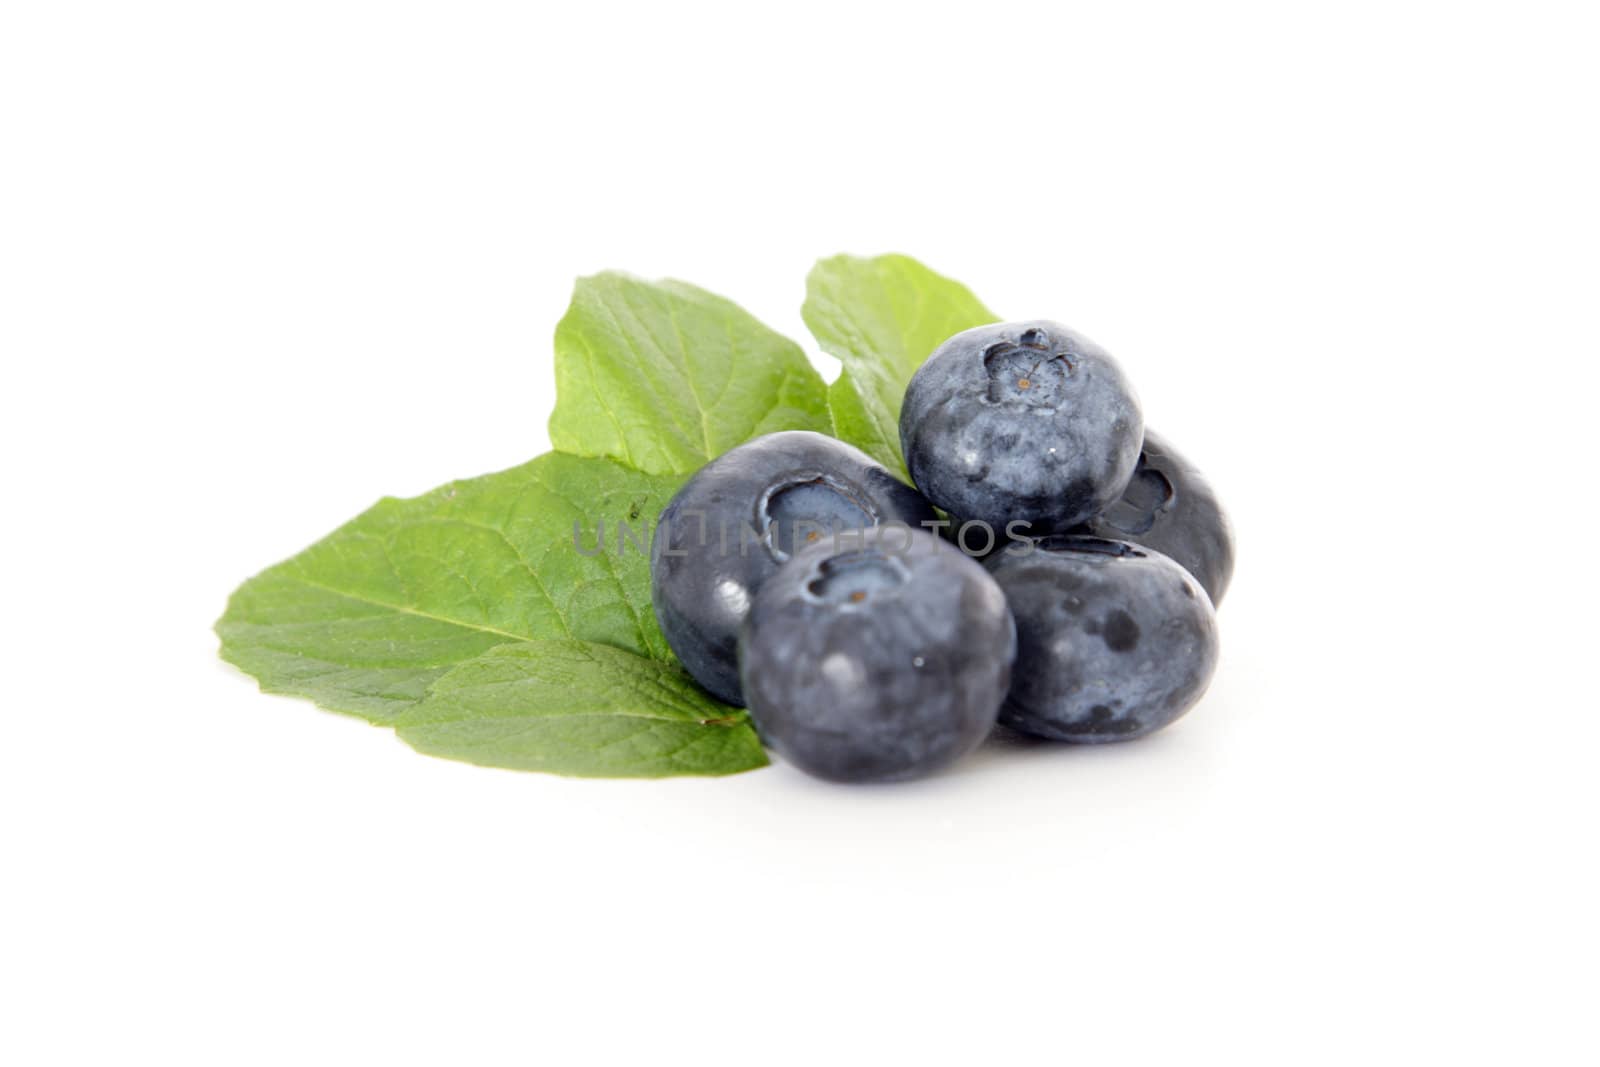 Blueberries by kaarsten